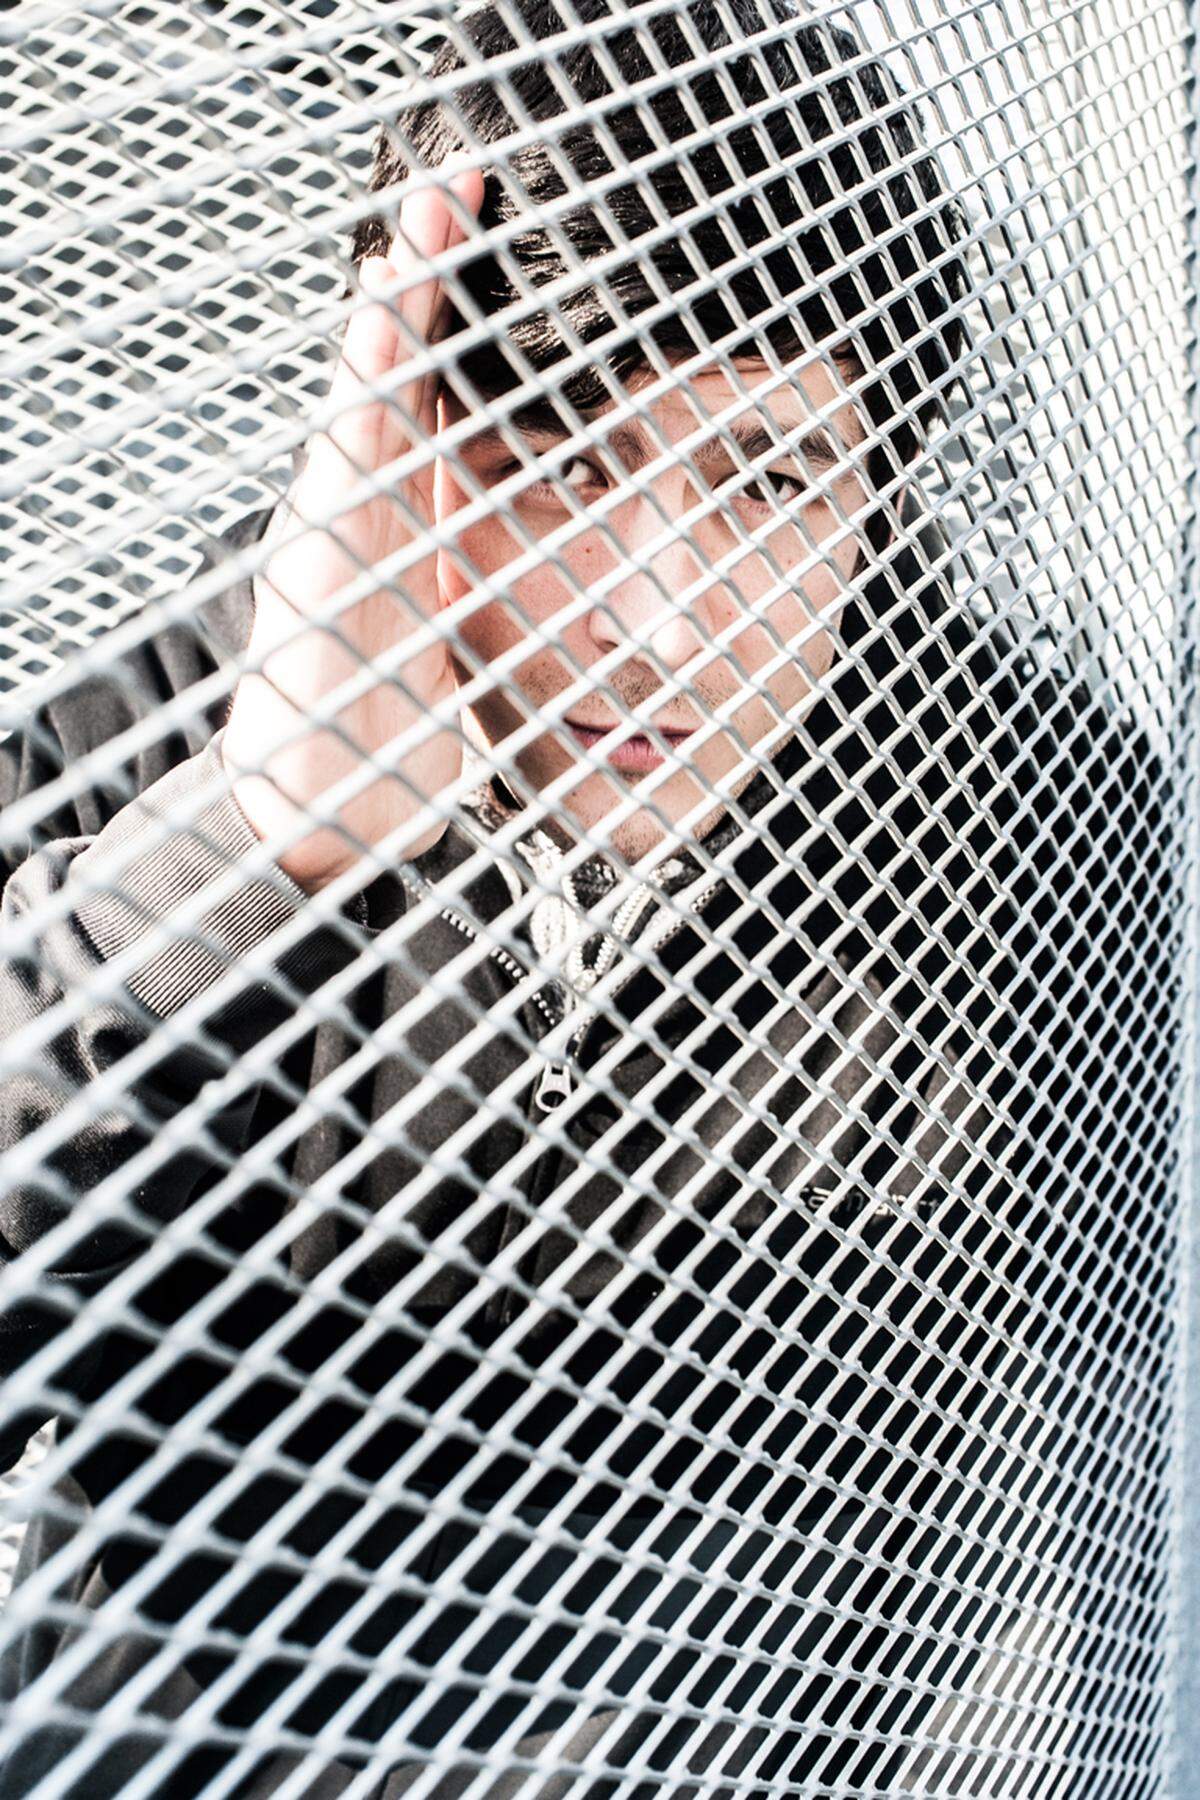 Der Musikproduzent, DJ und Labelbetreiber Ken Hayakawa ist eine Institution in Wien. Sein nächster Auftritt: am 30. April in der Grellen Forelle in Wien.soundcloud.com/kenhayakawa